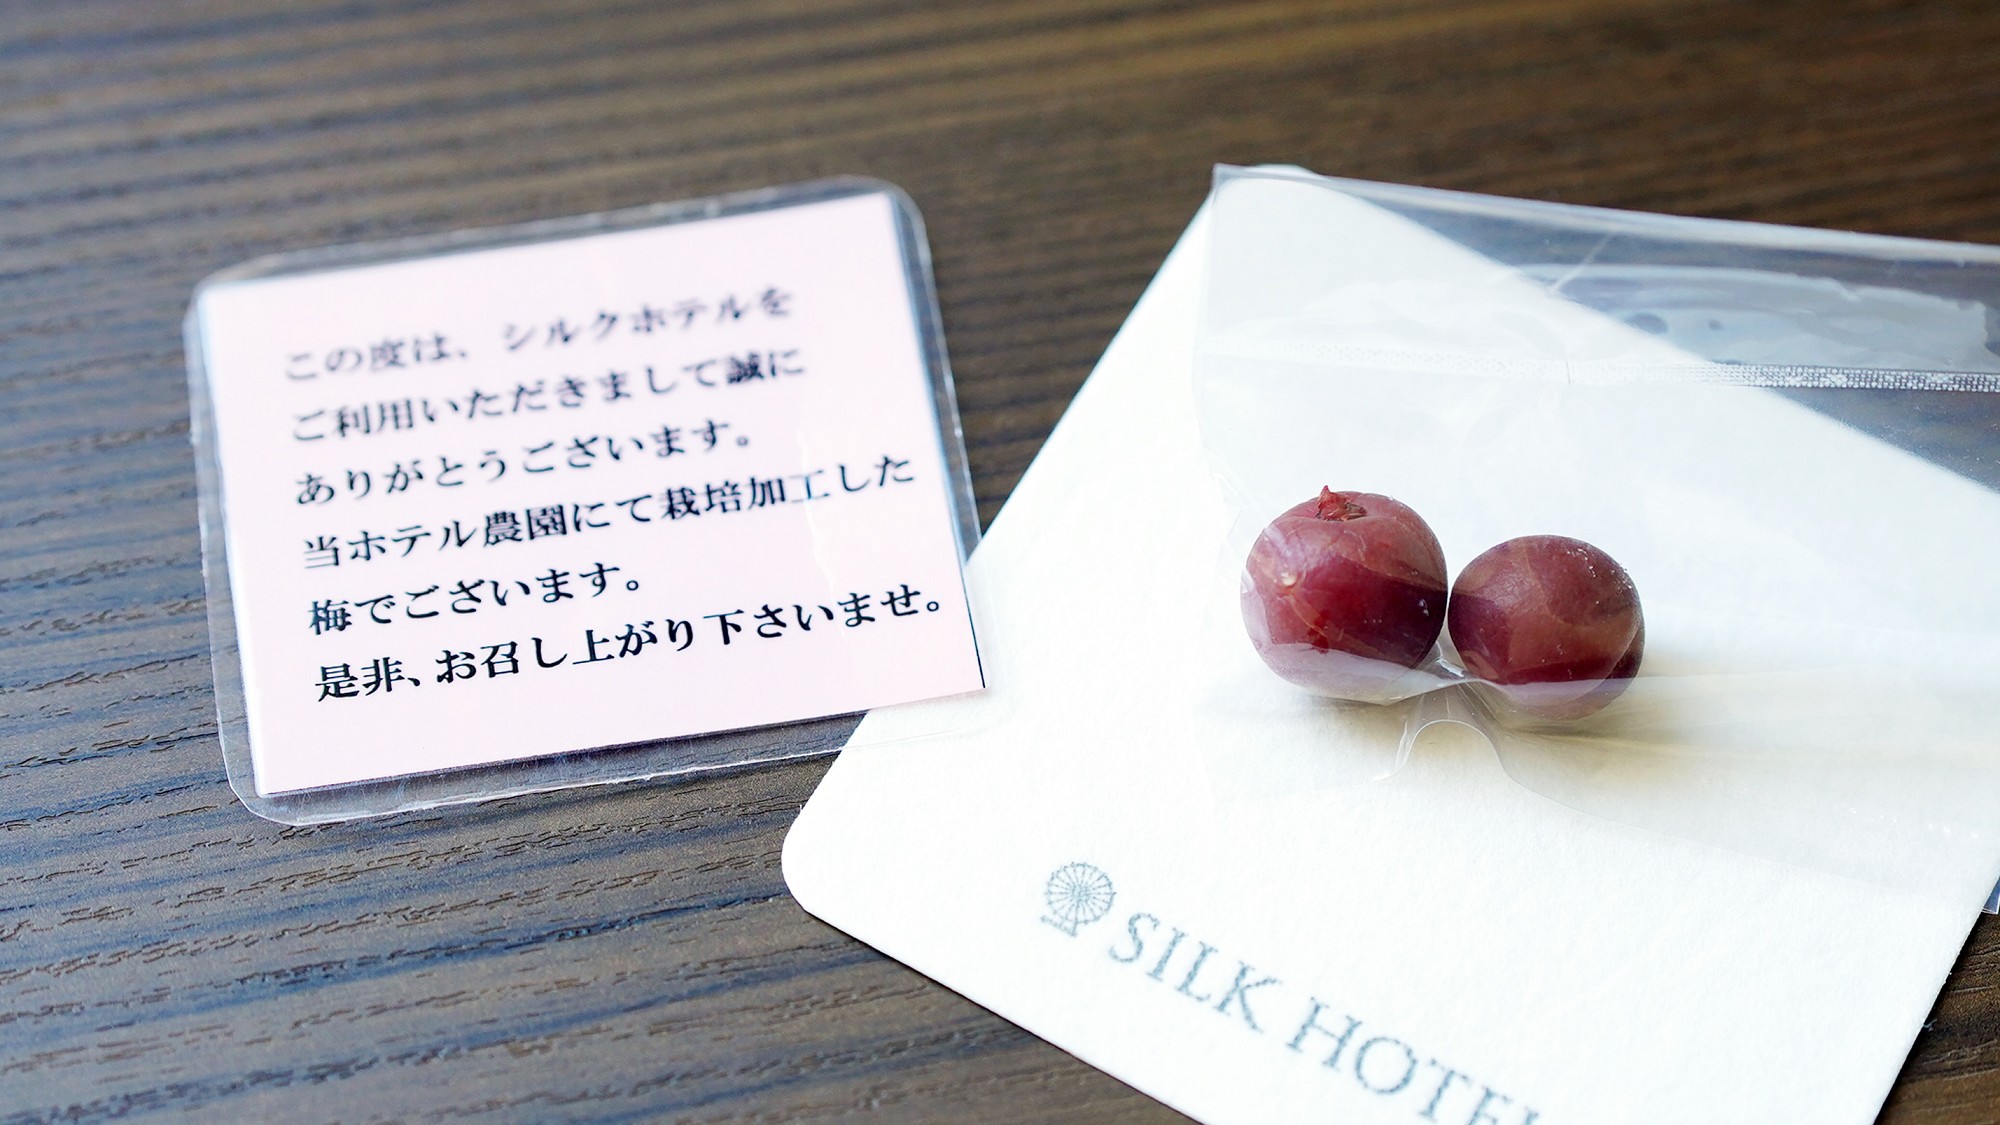 【客室備品】客室には当ホテルの農園にて栽培加工した小梅をご用意しております。